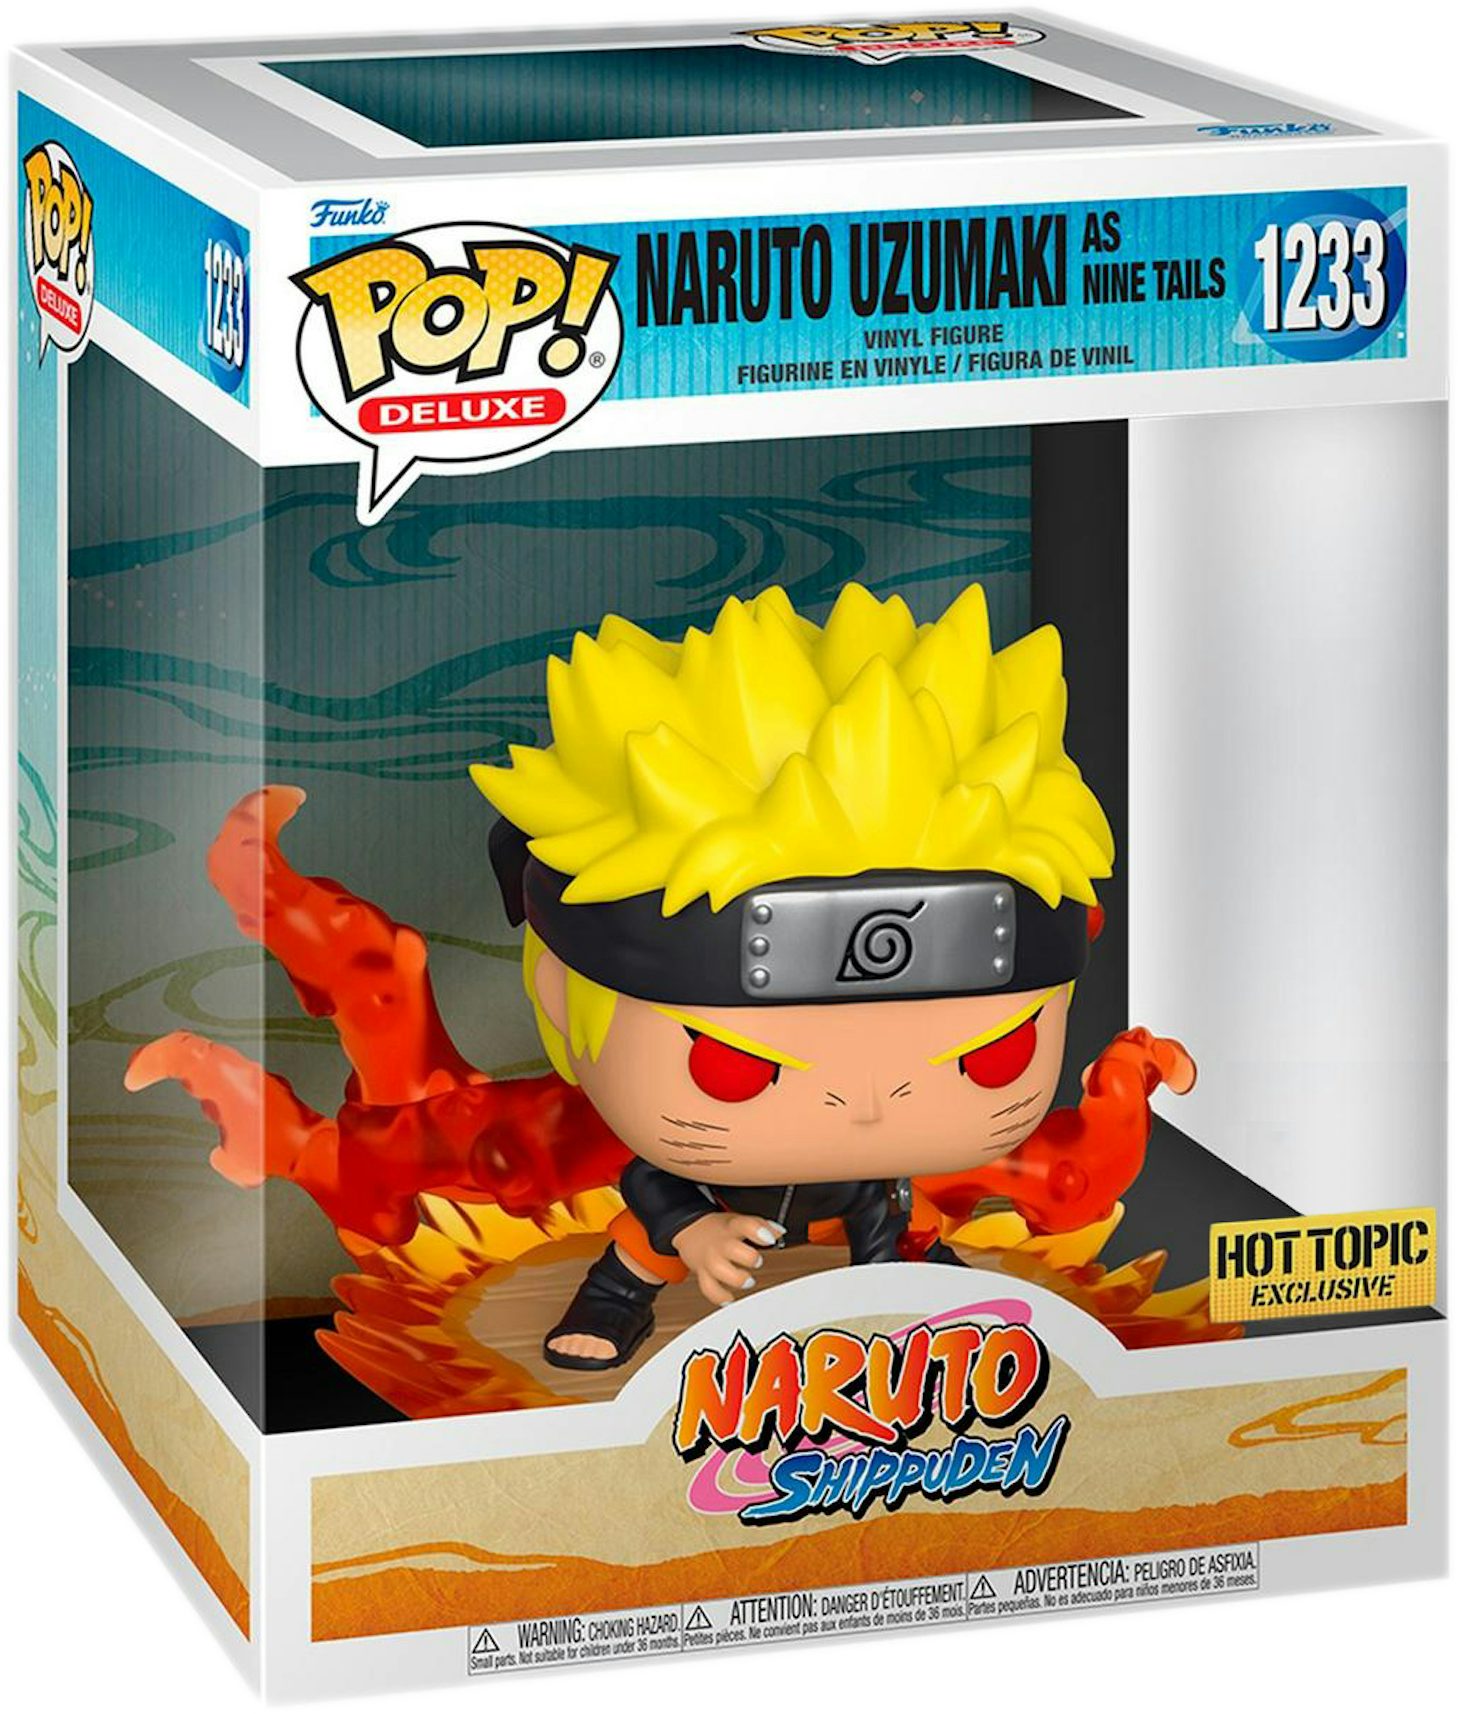 Hot Topic Naruto Shippuden Naruto Uzumaki Plush